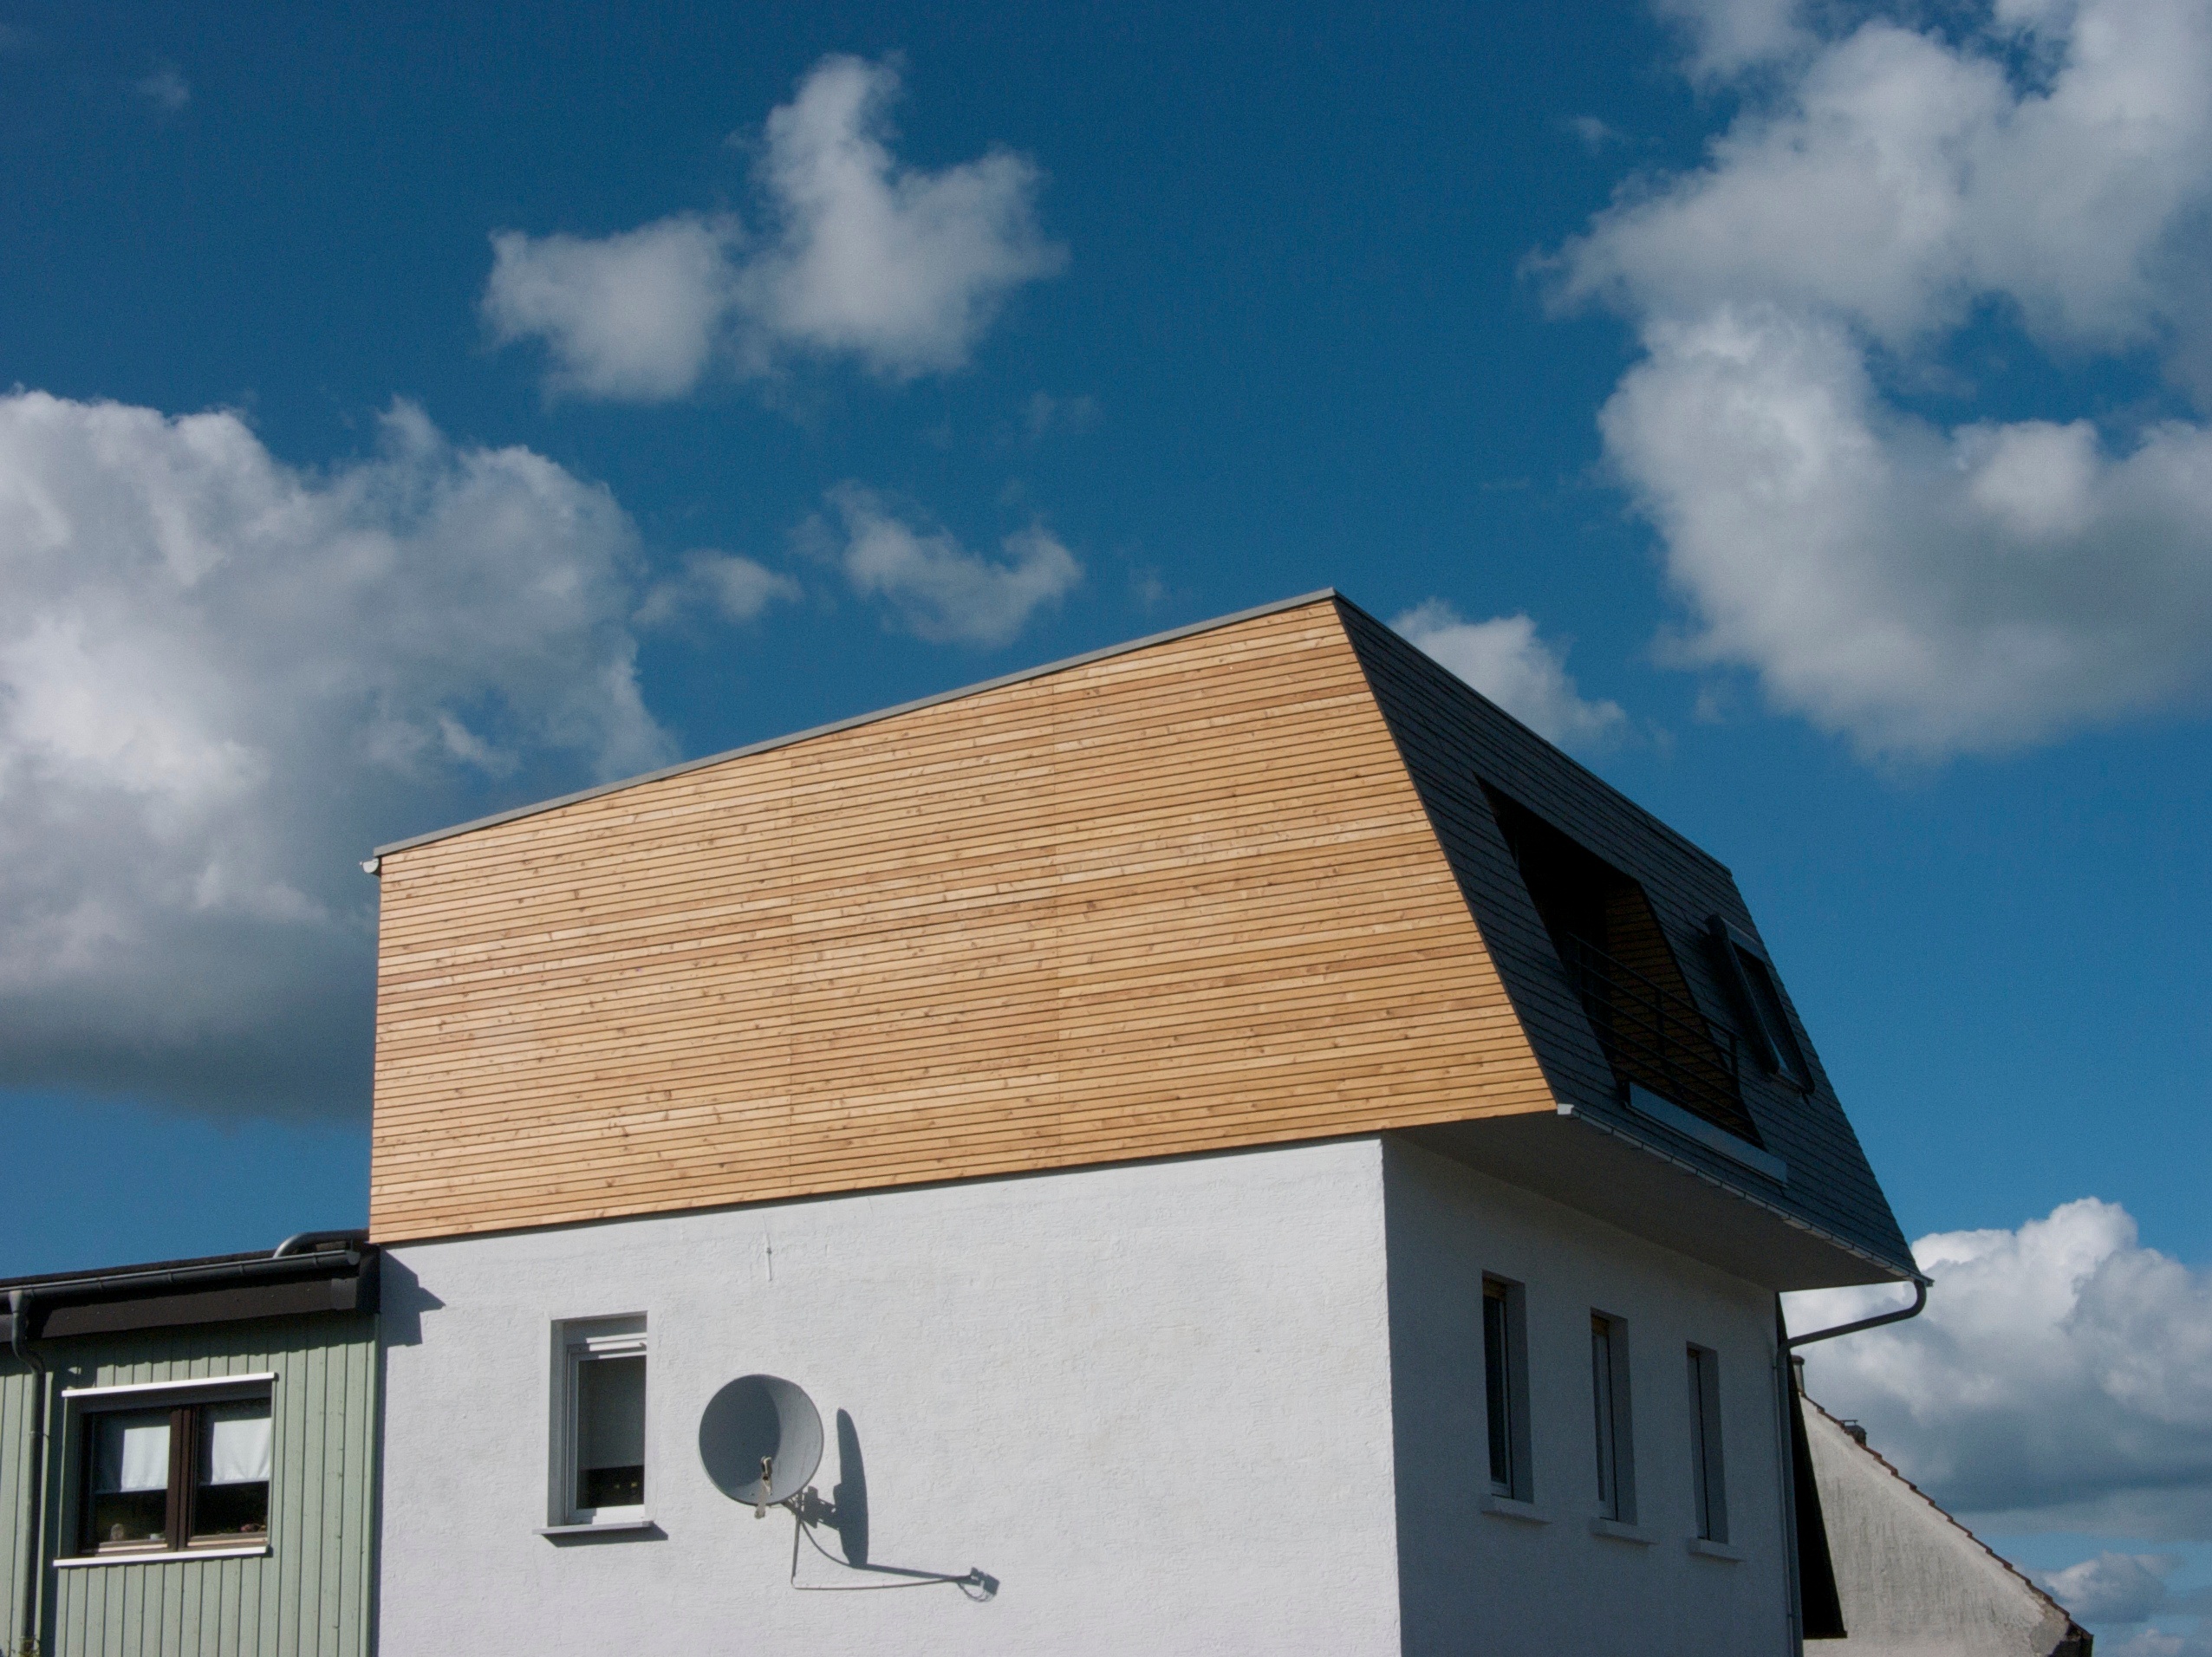 Moderner Dachausbau mit Dachaufstockung und Holzverkleidung eines Wohnhaus.